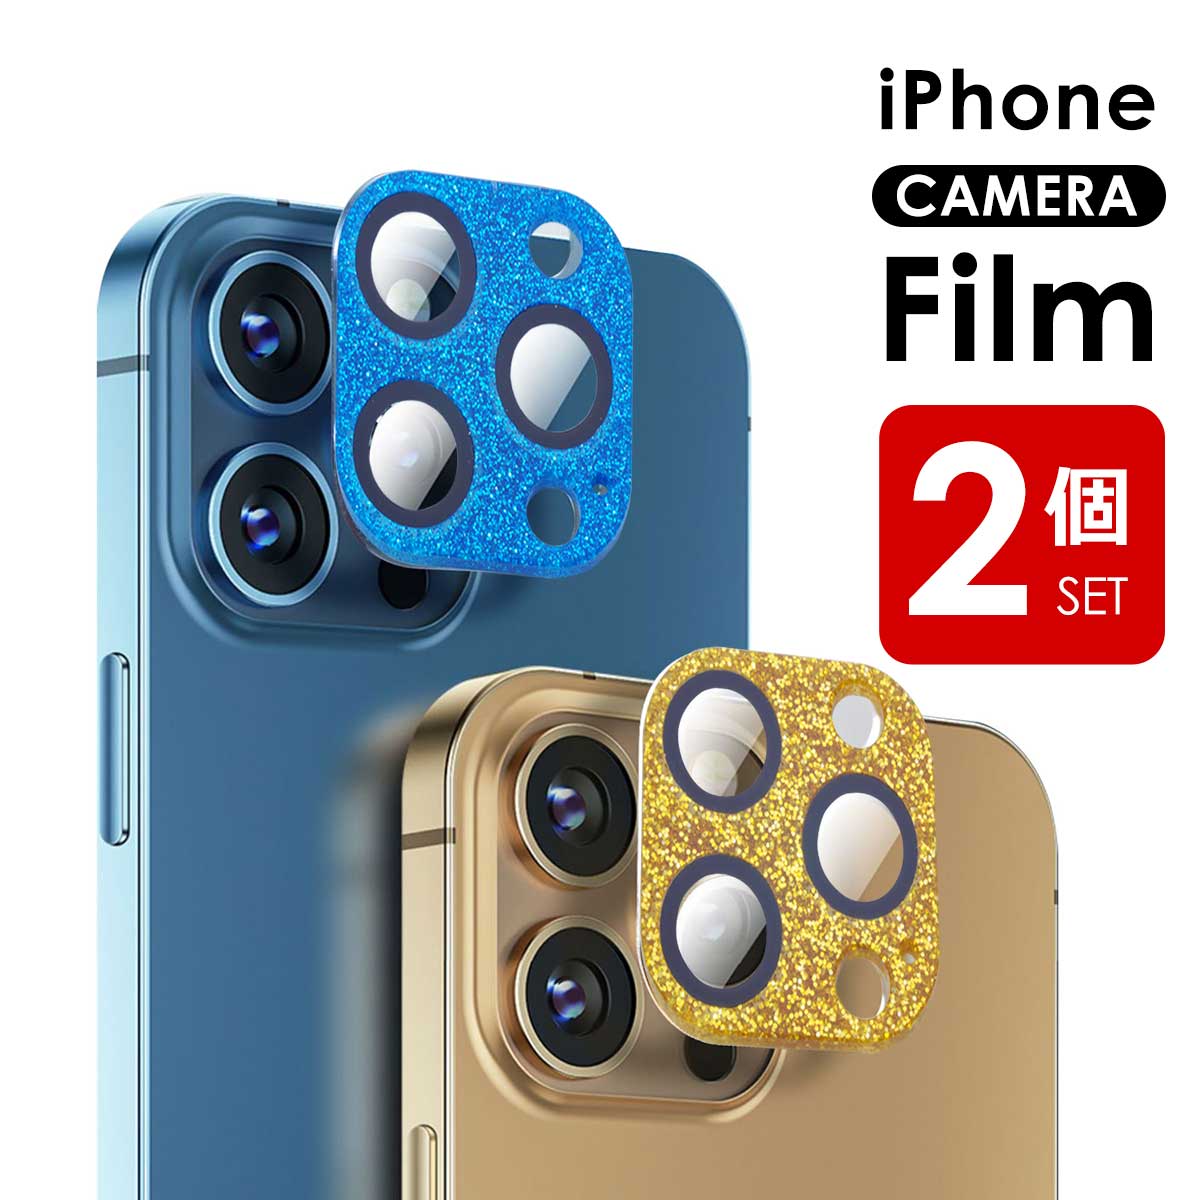 カメラレンズカバー iphone カメラレンズ ガラスフィルム iPhone13 Mini Pro Max iPhone 12 11 Pro Max ガラスフィルム 全面保護 iPad Pro レンズカバー ラメ キラキラ レンズ 保護シート フィルム カメラ保護フィルム 高透過率 硬度9H アイフォン